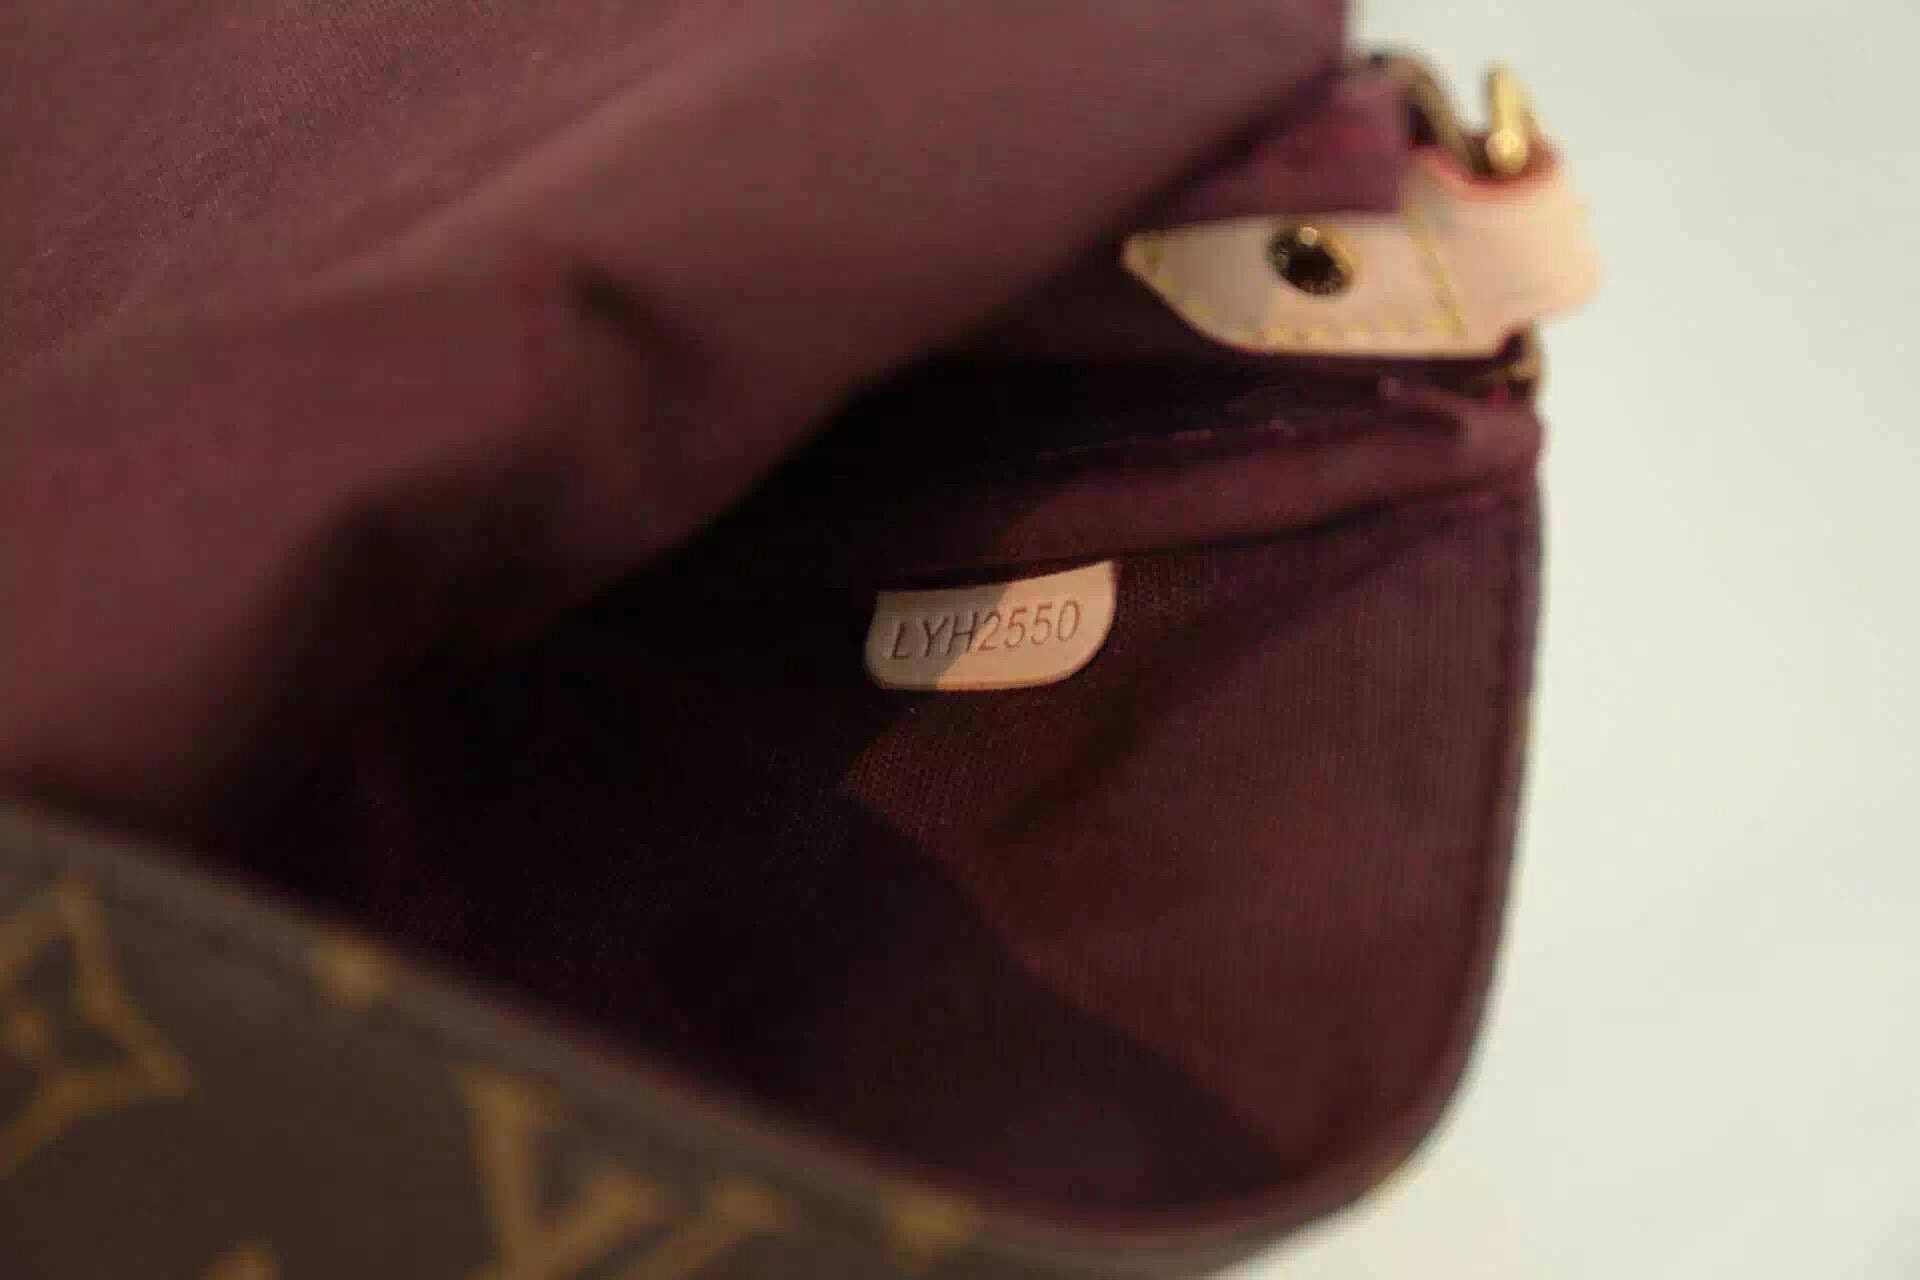 1:1 Louis Vuitton on X: PM Shoulder Bag Monogram M40717 Size: W:9.4(24cm)  / H:5.5(14cm) / D:1.6(4cm) US$85+US$15 delivery charge.   / X